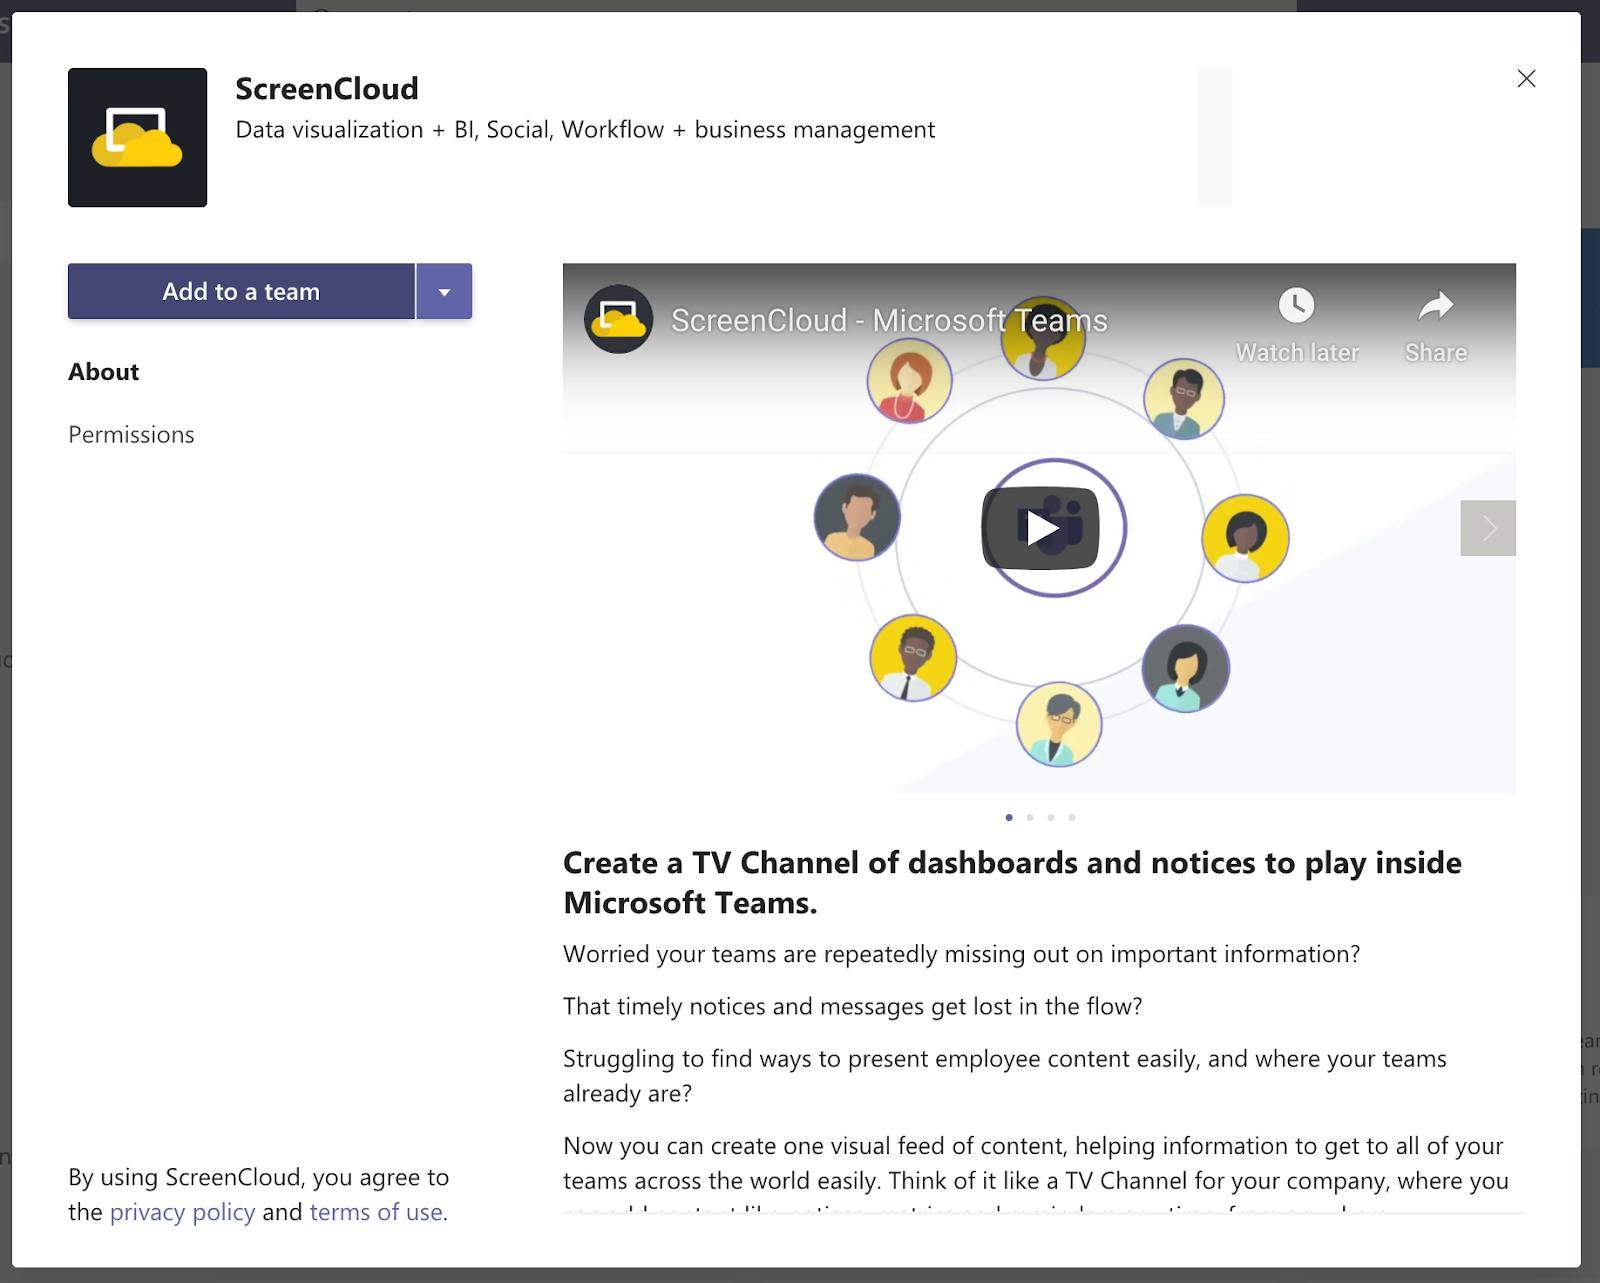 ScreenCloud App for Microsoft Teams - ScreenCloud App Install 11.03.2020.png
